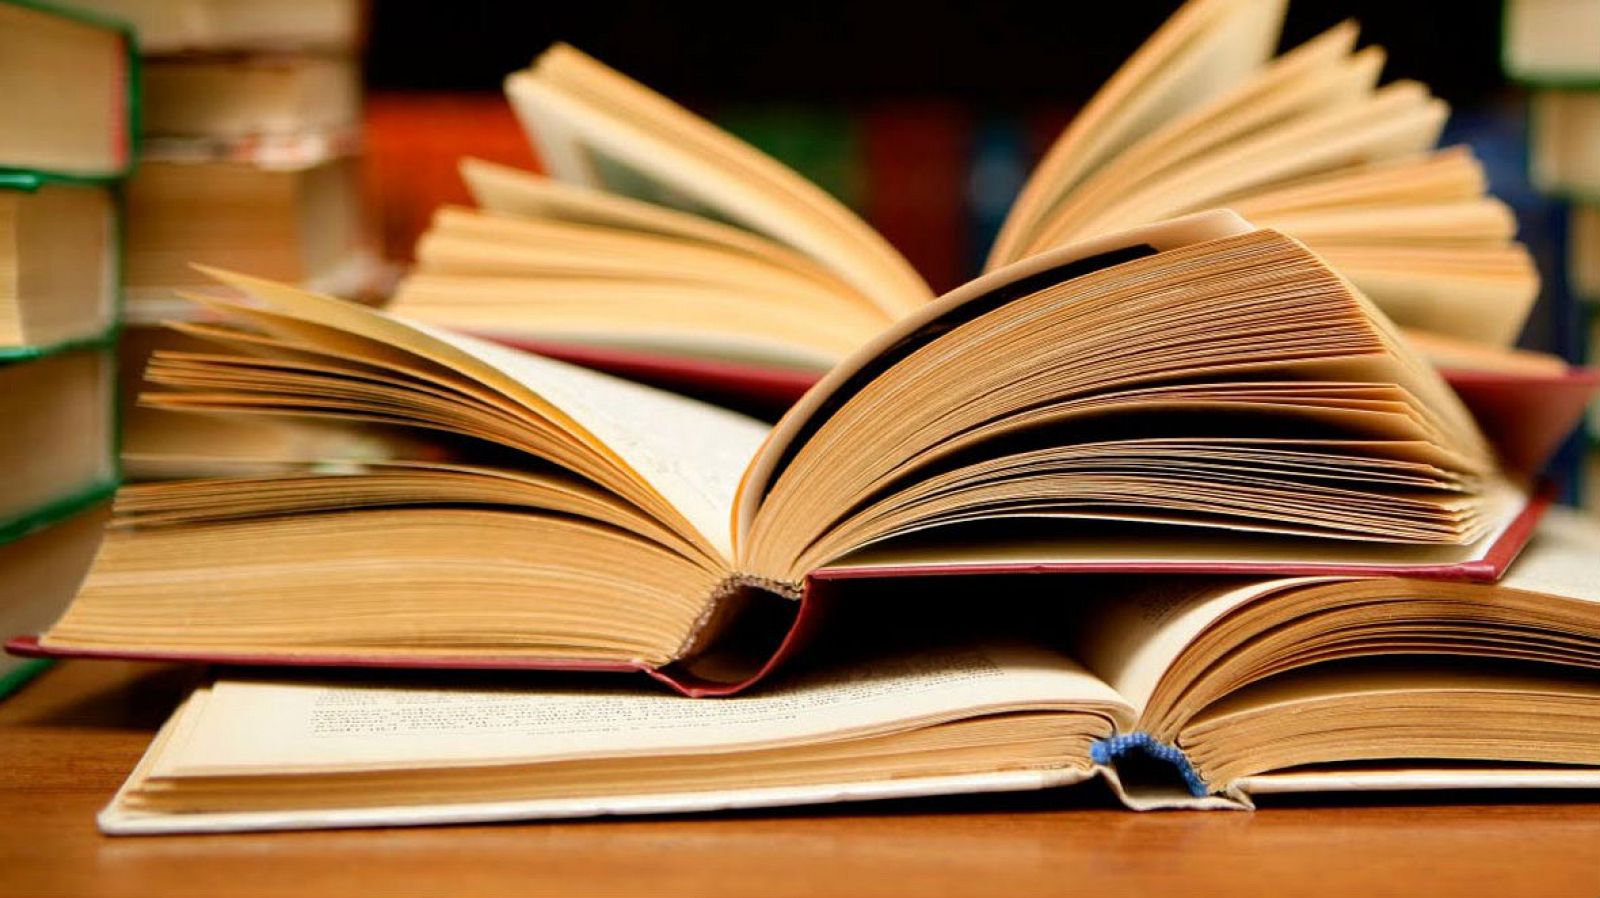 Cada 23 de abril se celebra el Día Internacional del Libro, celebración promovida por la Unesco desde 1995